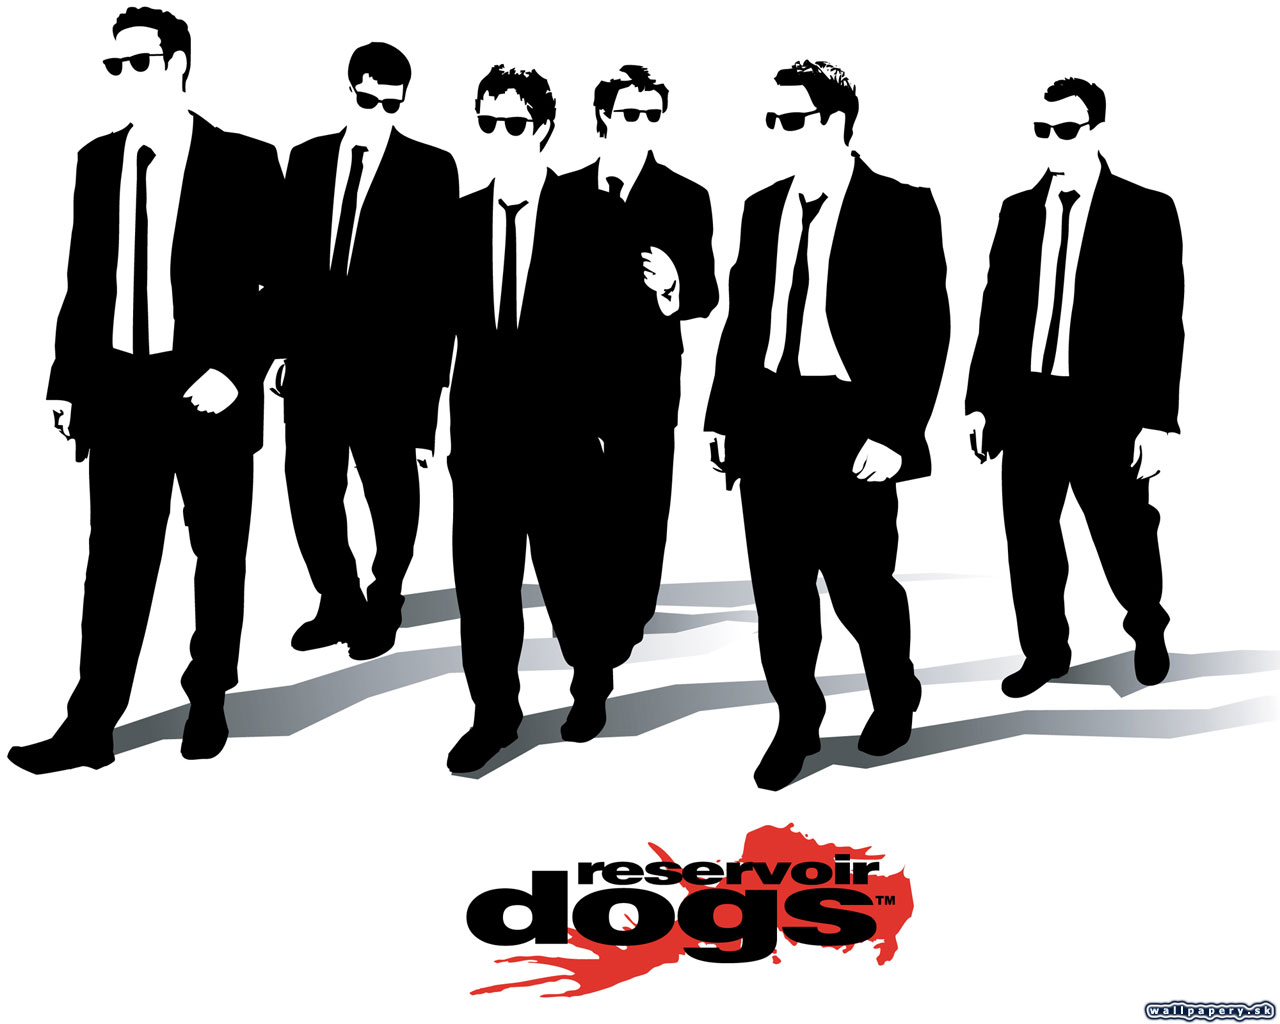 Reservoir Dogs - wallpaper 12